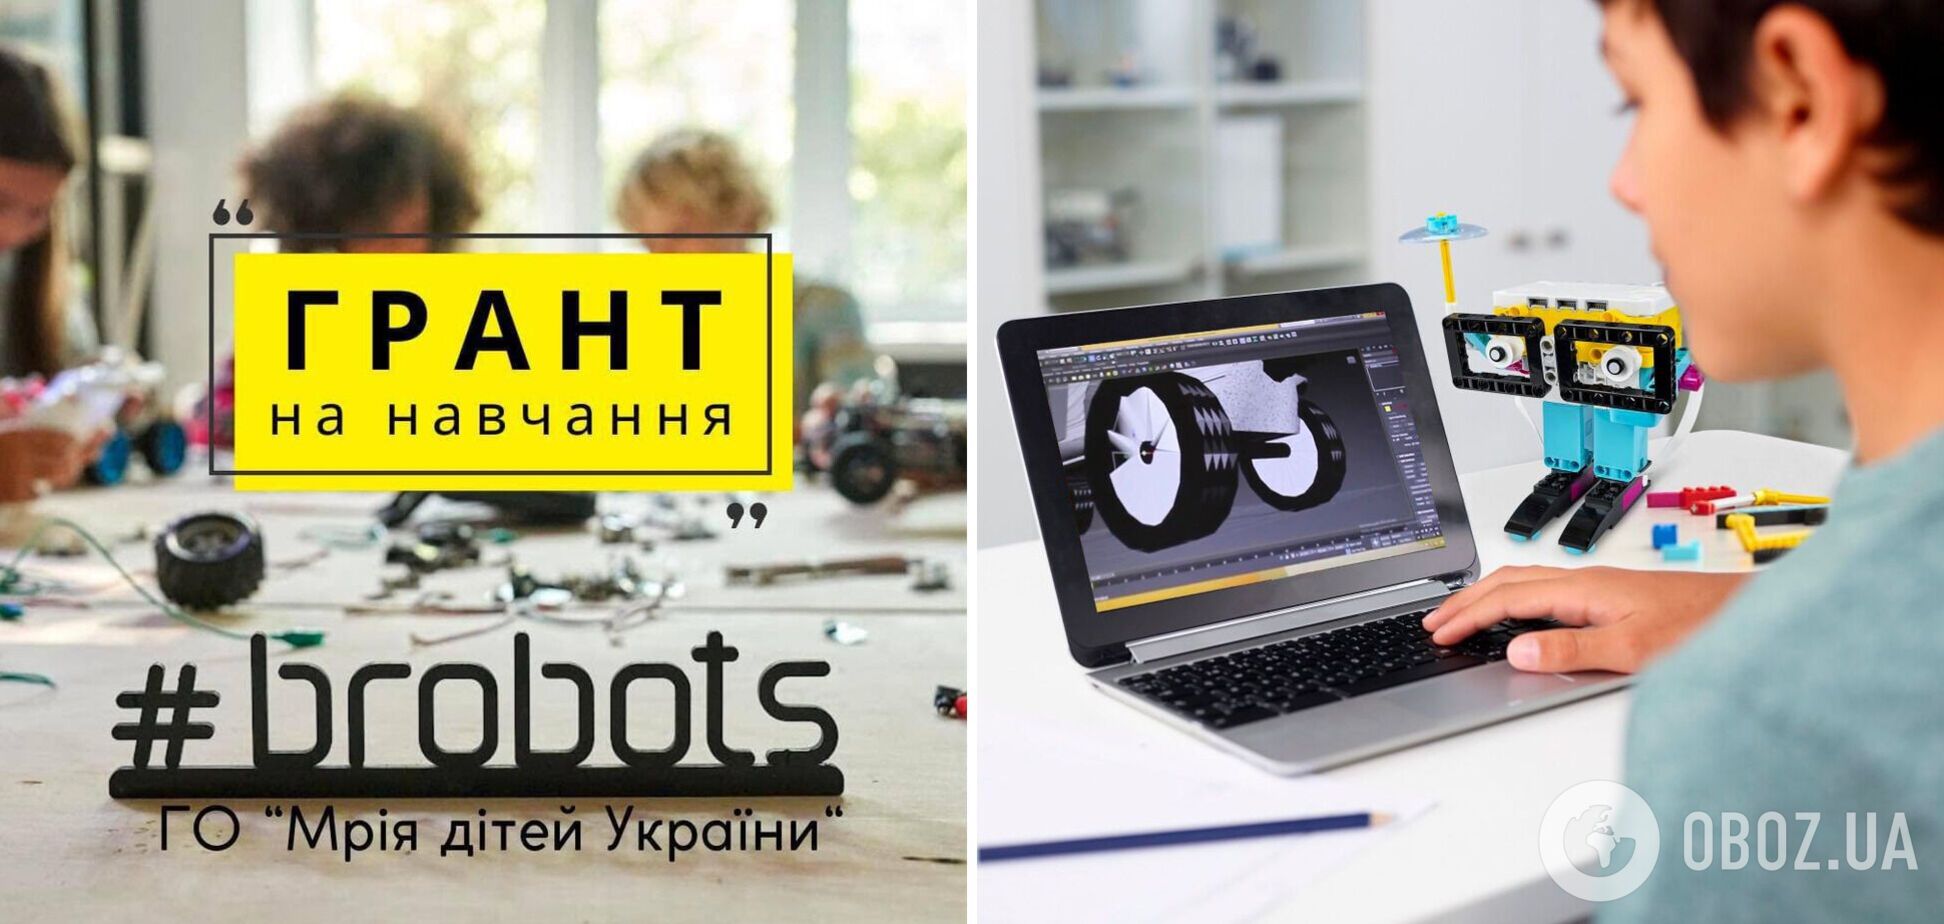 ОО 'Мечта детей Украины' поможет детям погибших героев бесплатно изучить программирование и робототехнику